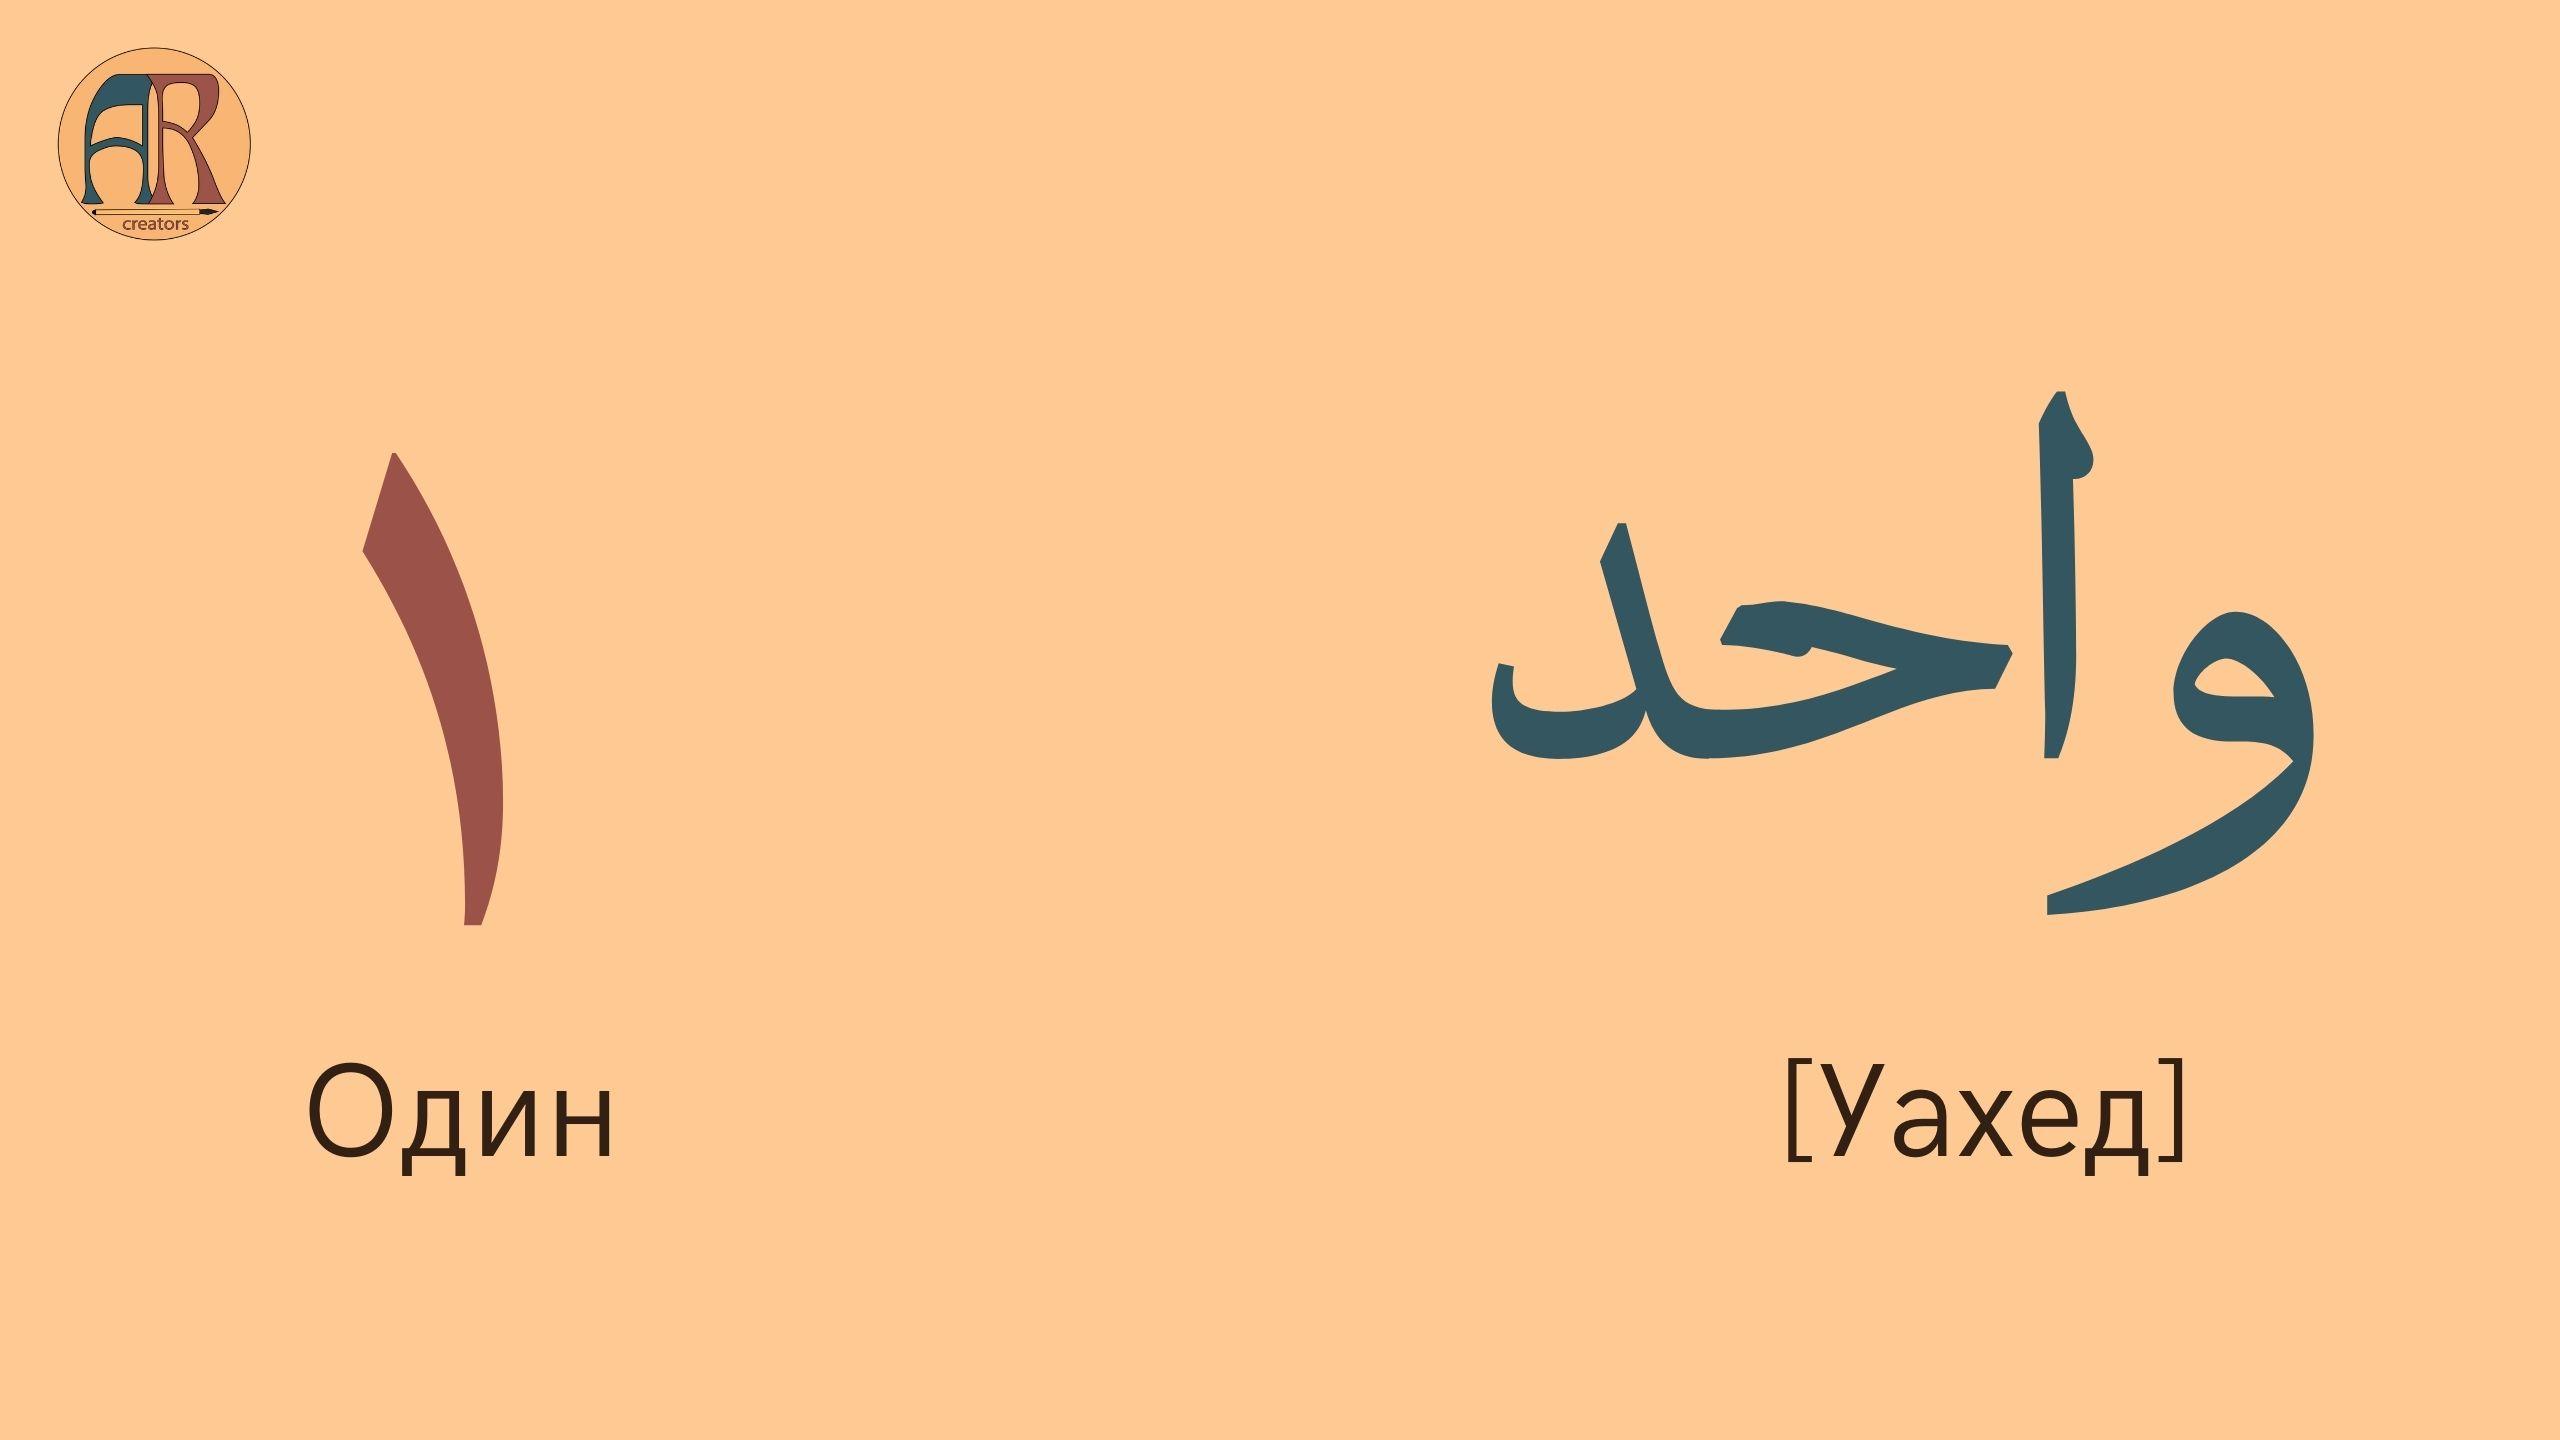 Обои на арабском с переводом